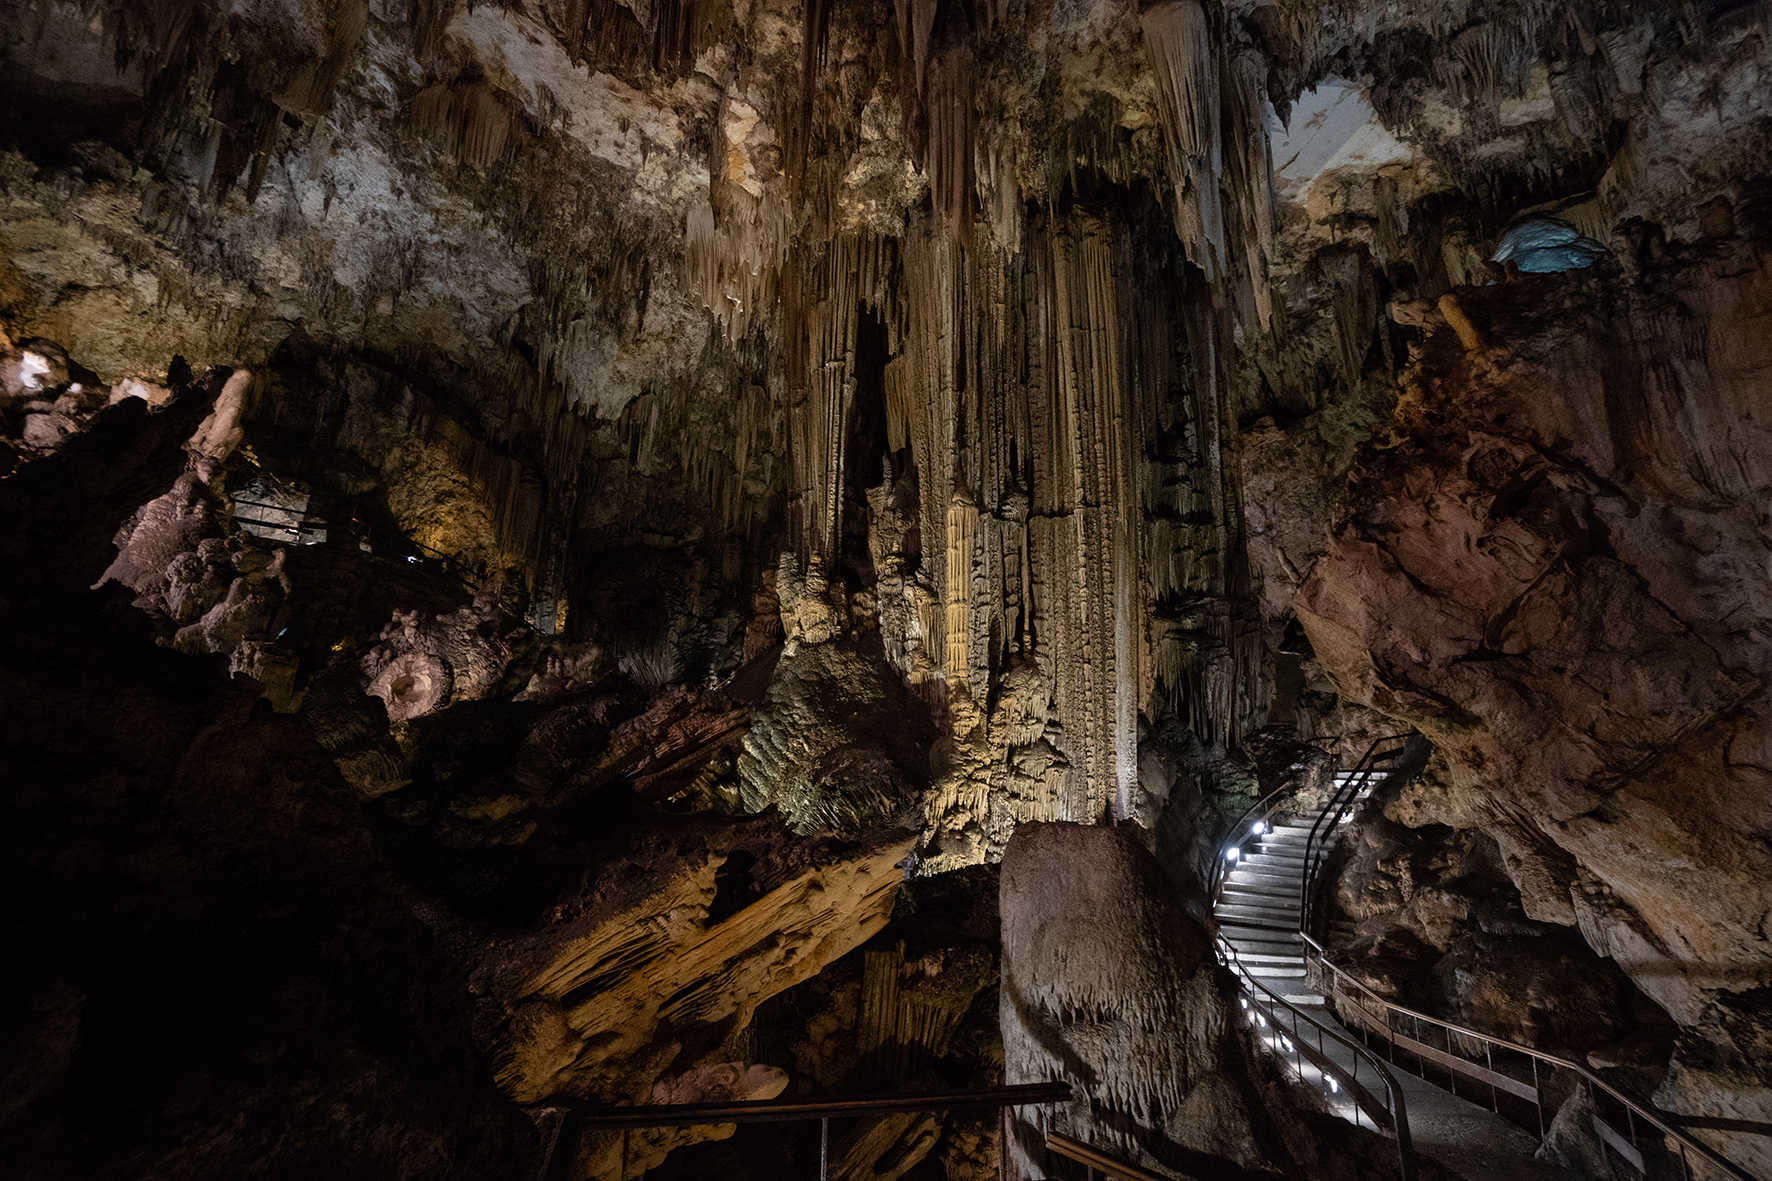 Cueva de Nerja 